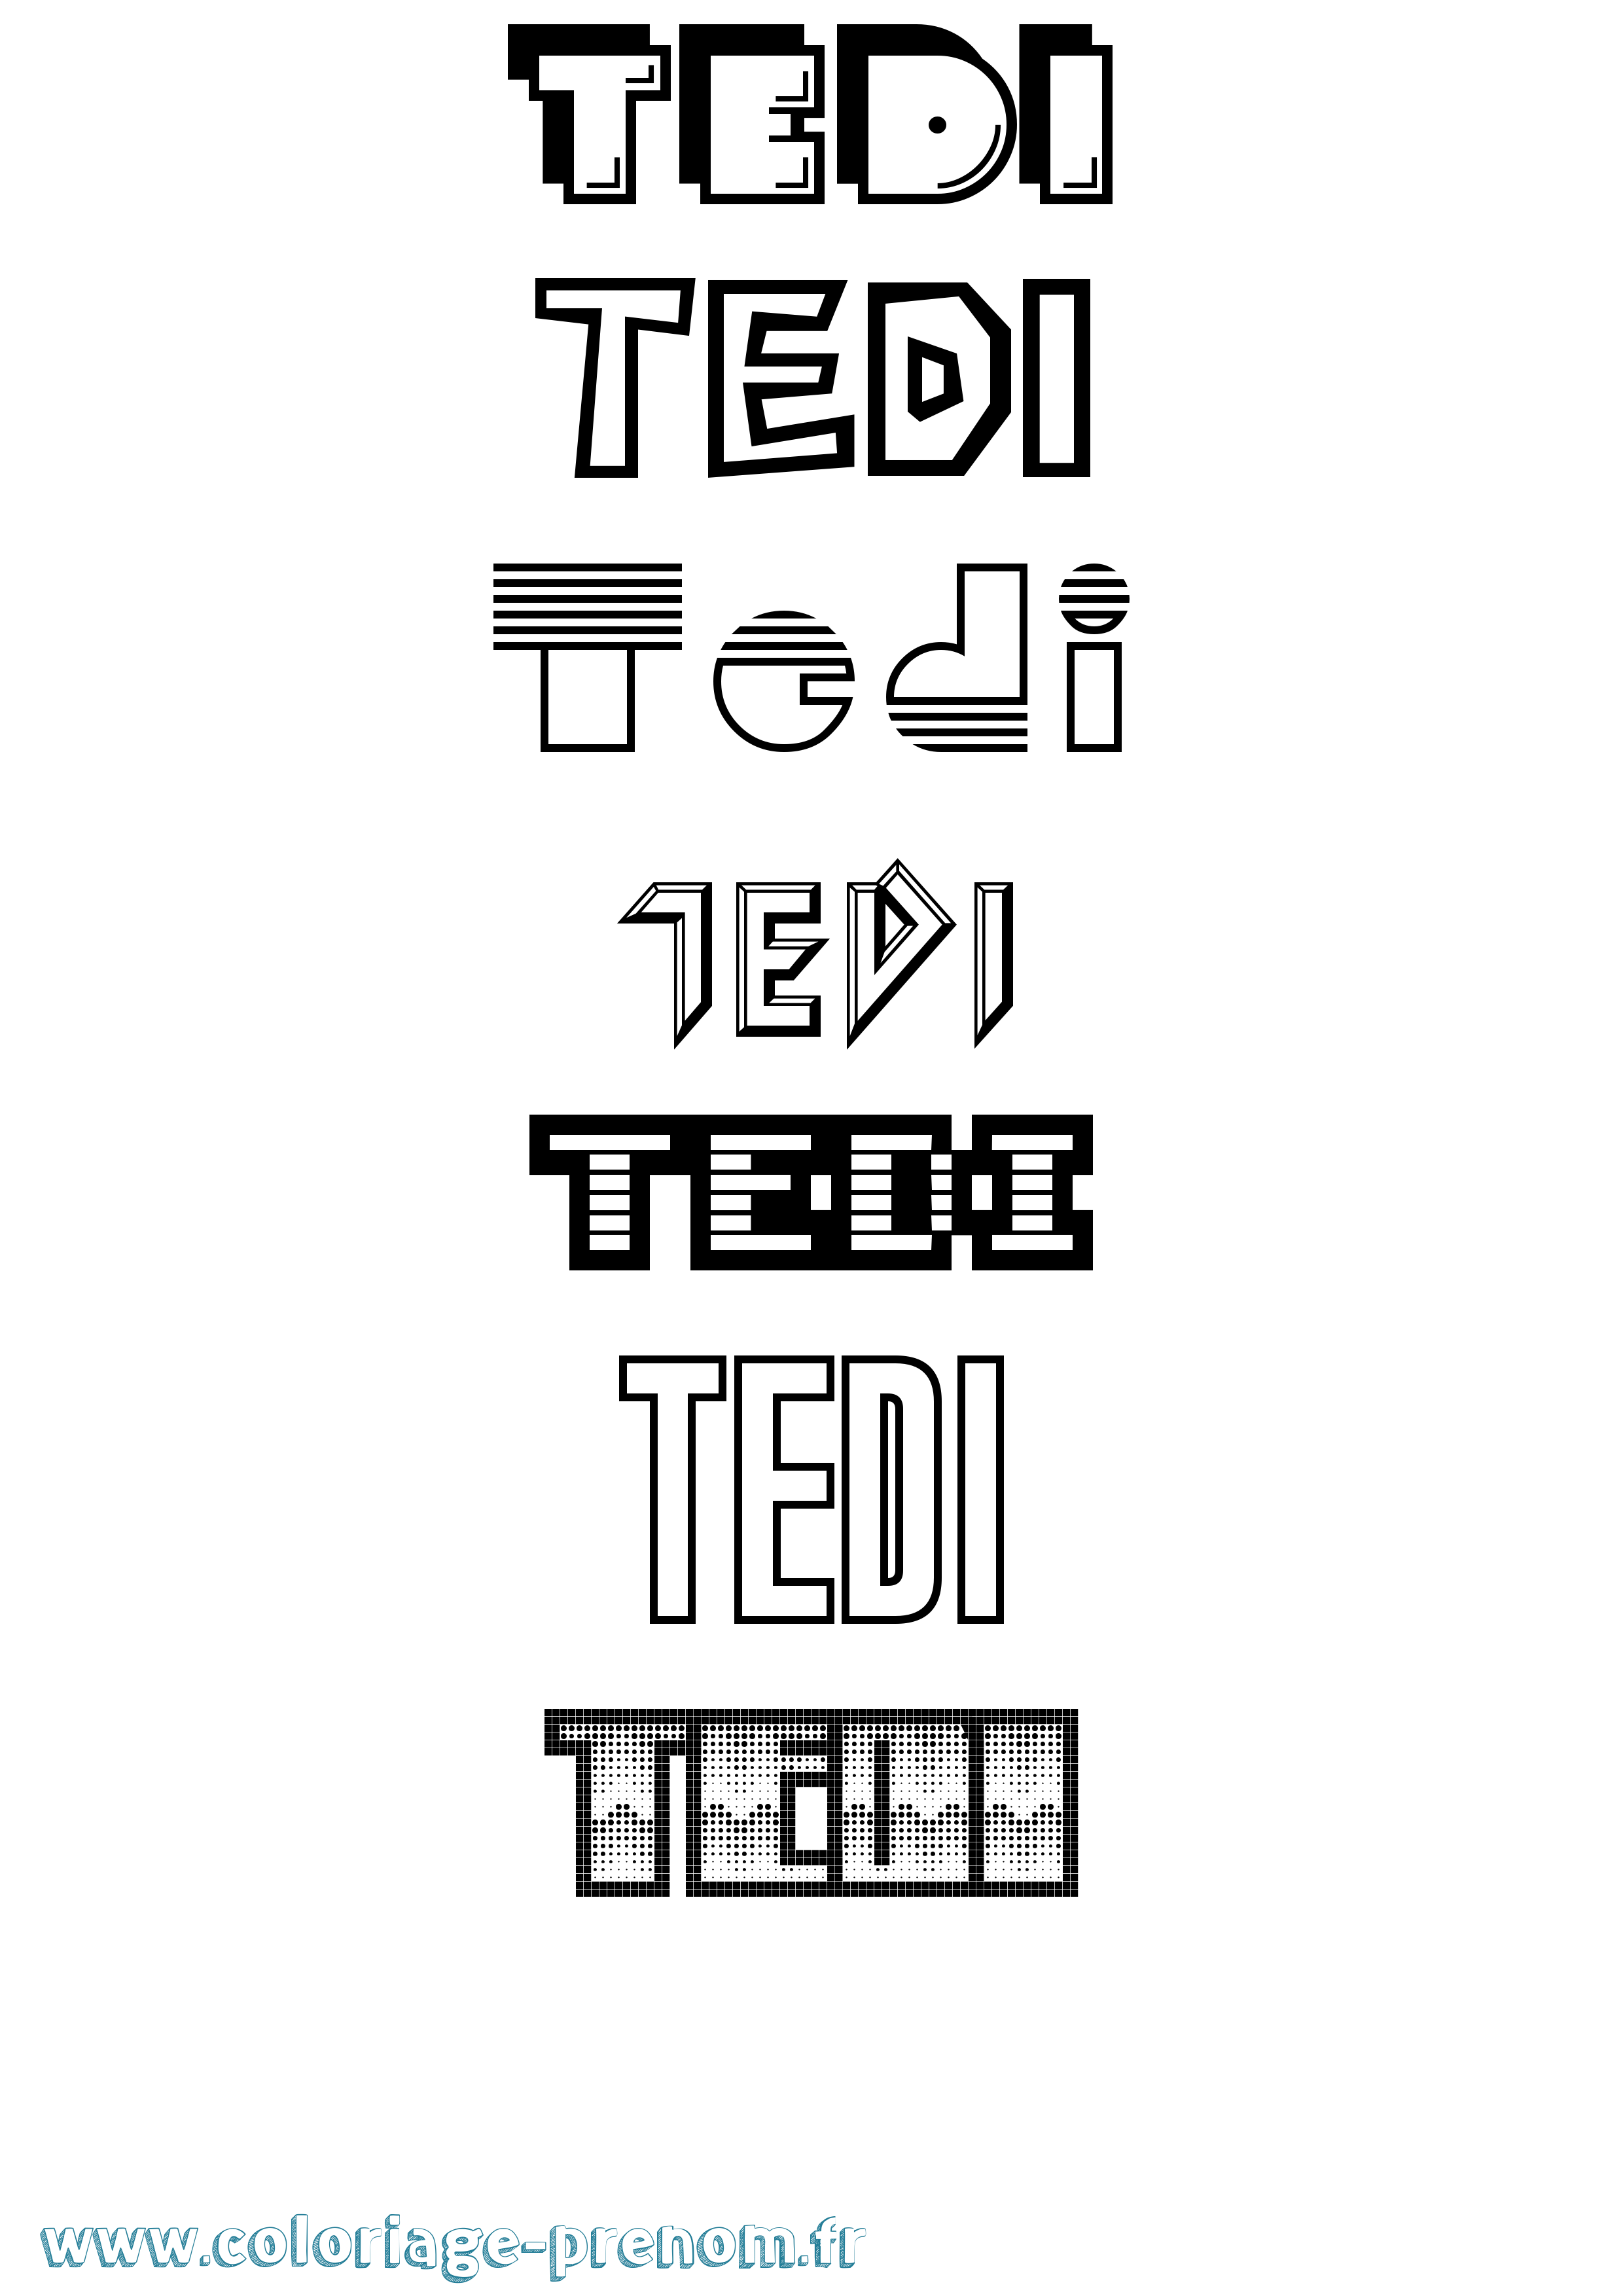 Coloriage prénom Tedi Jeux Vidéos